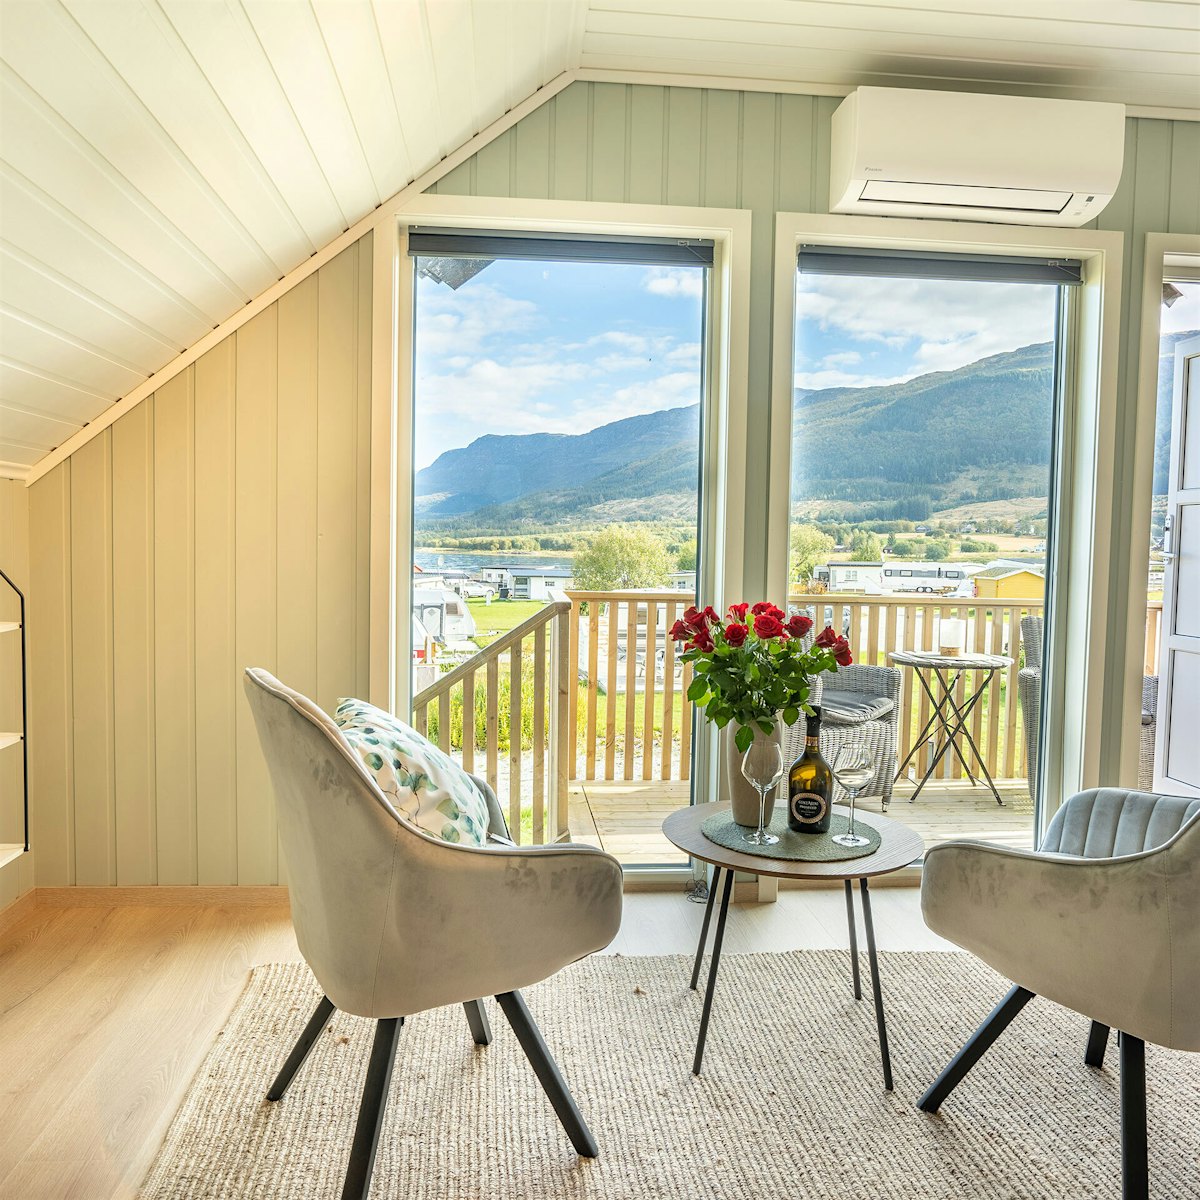 Lys og moderne stue med store vinduer, to stoler og et bord med roser på. Utsikt utover fjell og hav. Foto